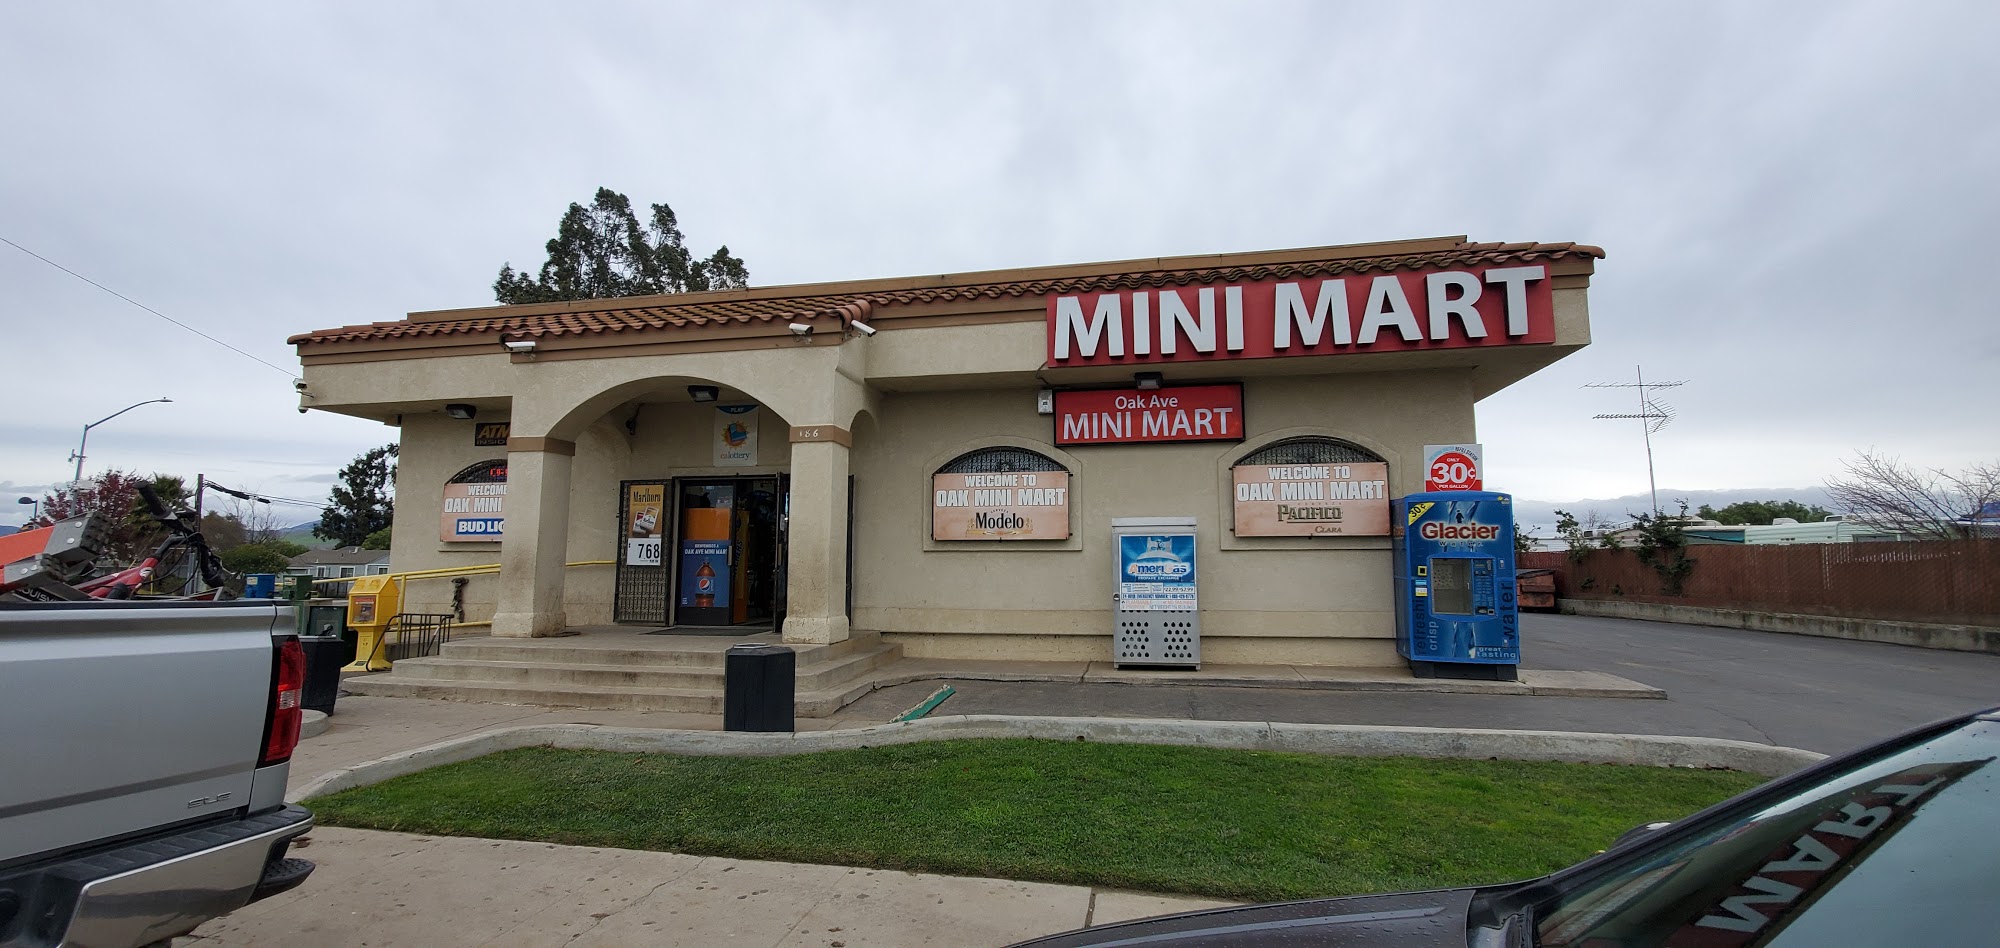 Oak Avenue Minimart